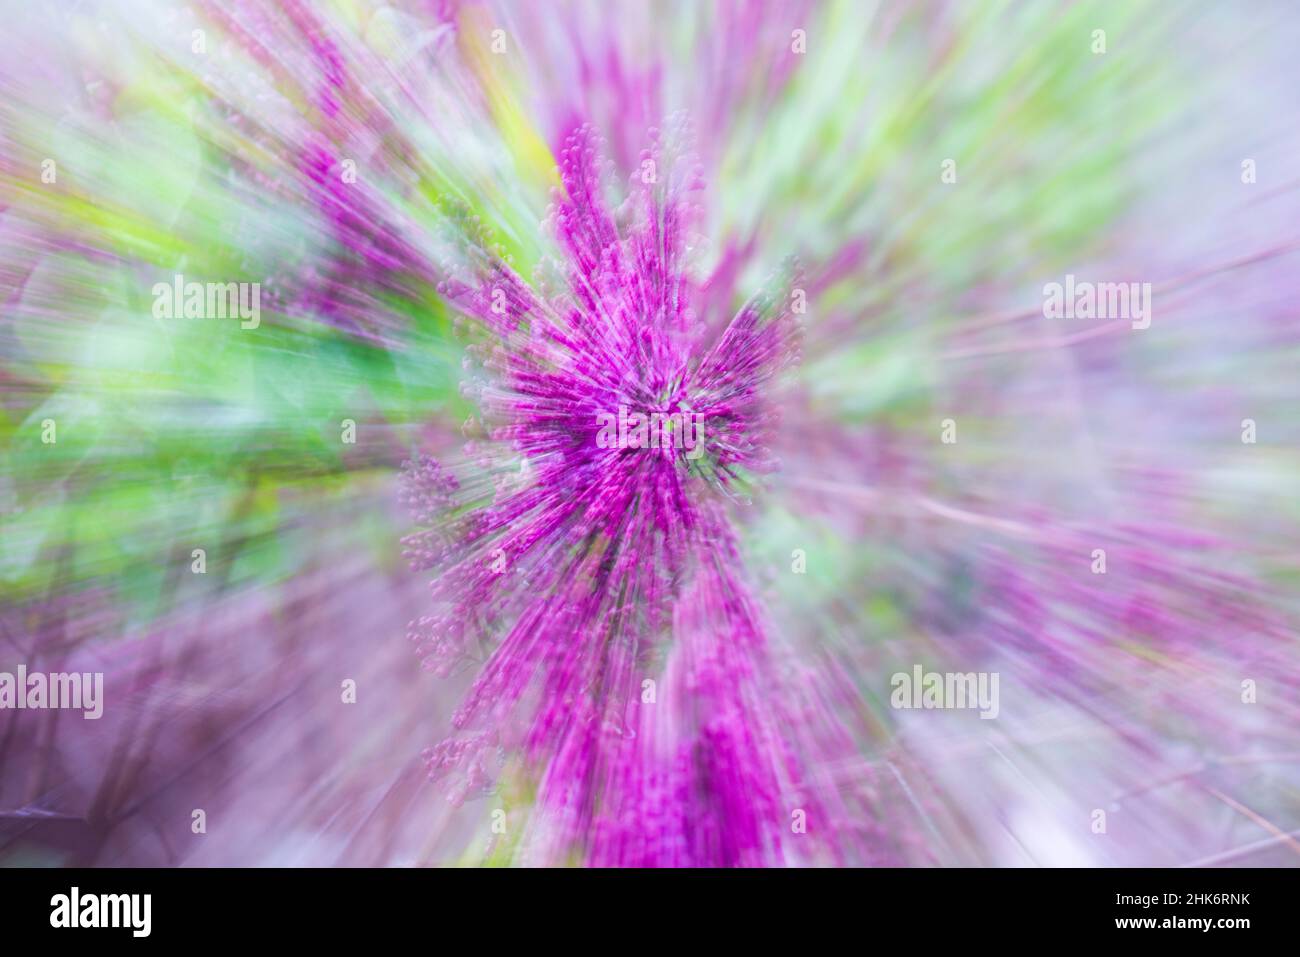 Fiori lilla, raffigurati con tecnica zoom Foto Stock